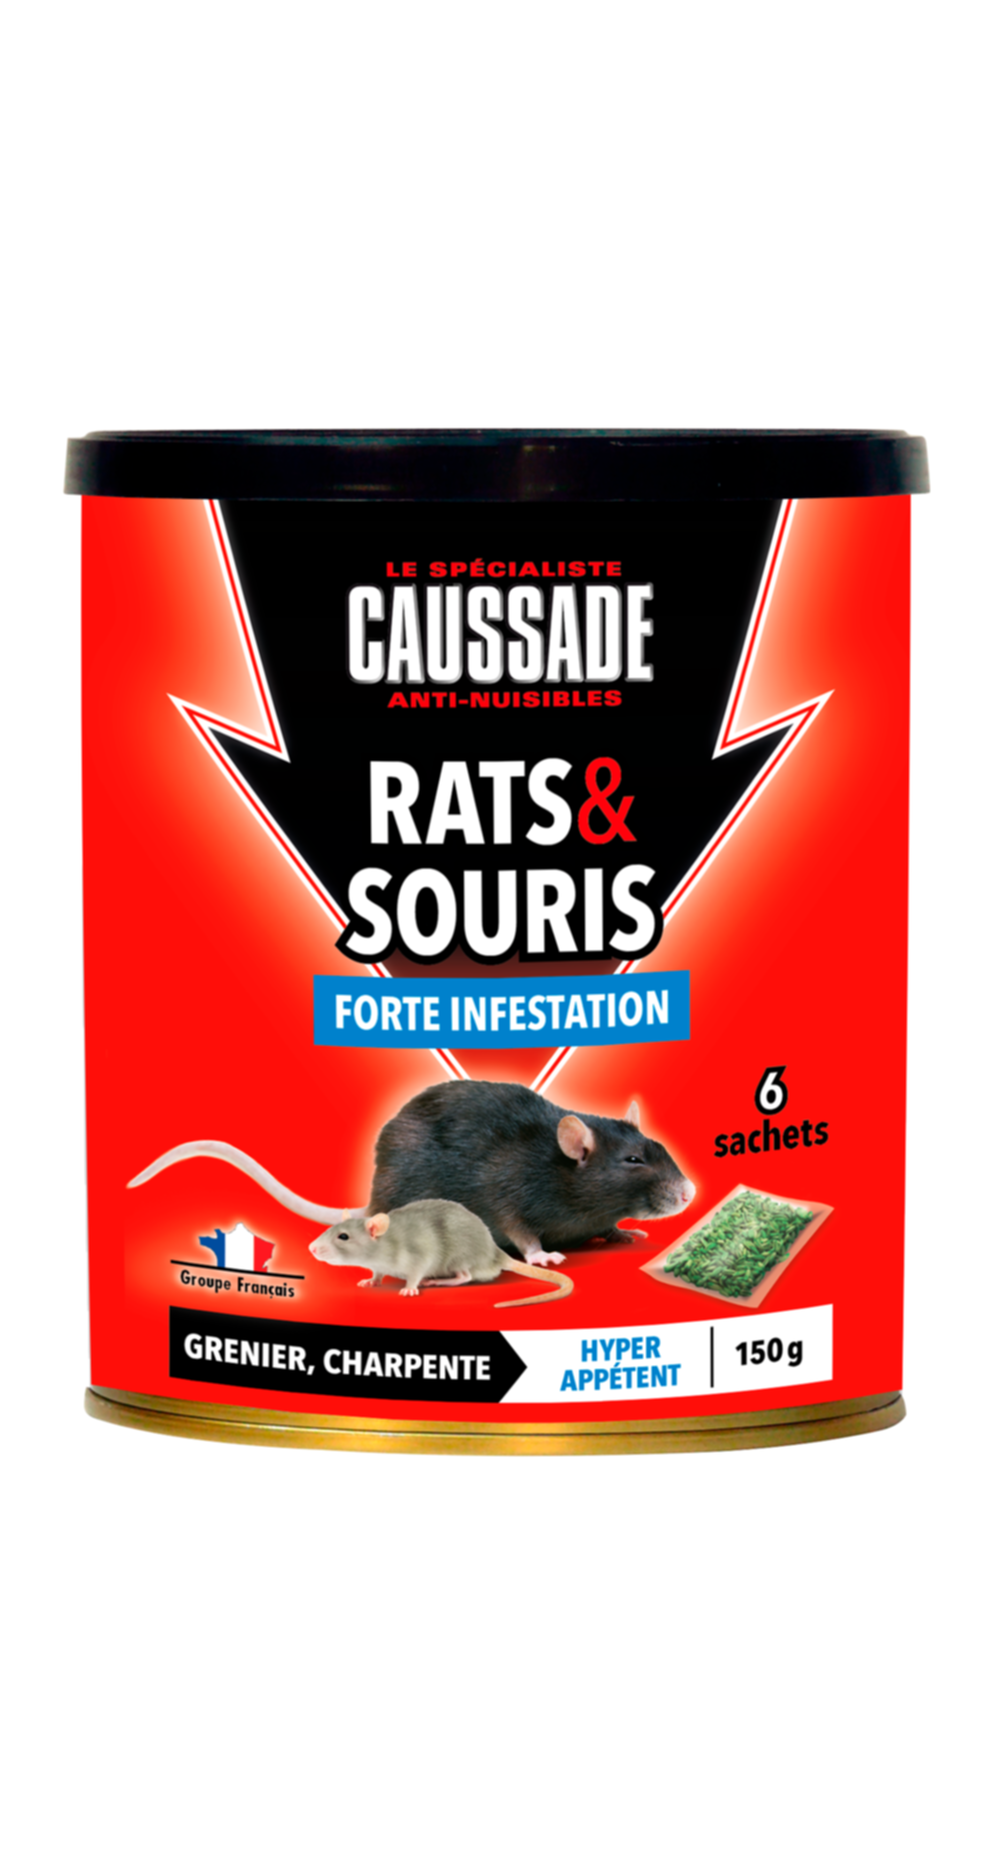 Traitement anti-nuisible céréales forte infestation rats&souris 150gr - CAUSSADE